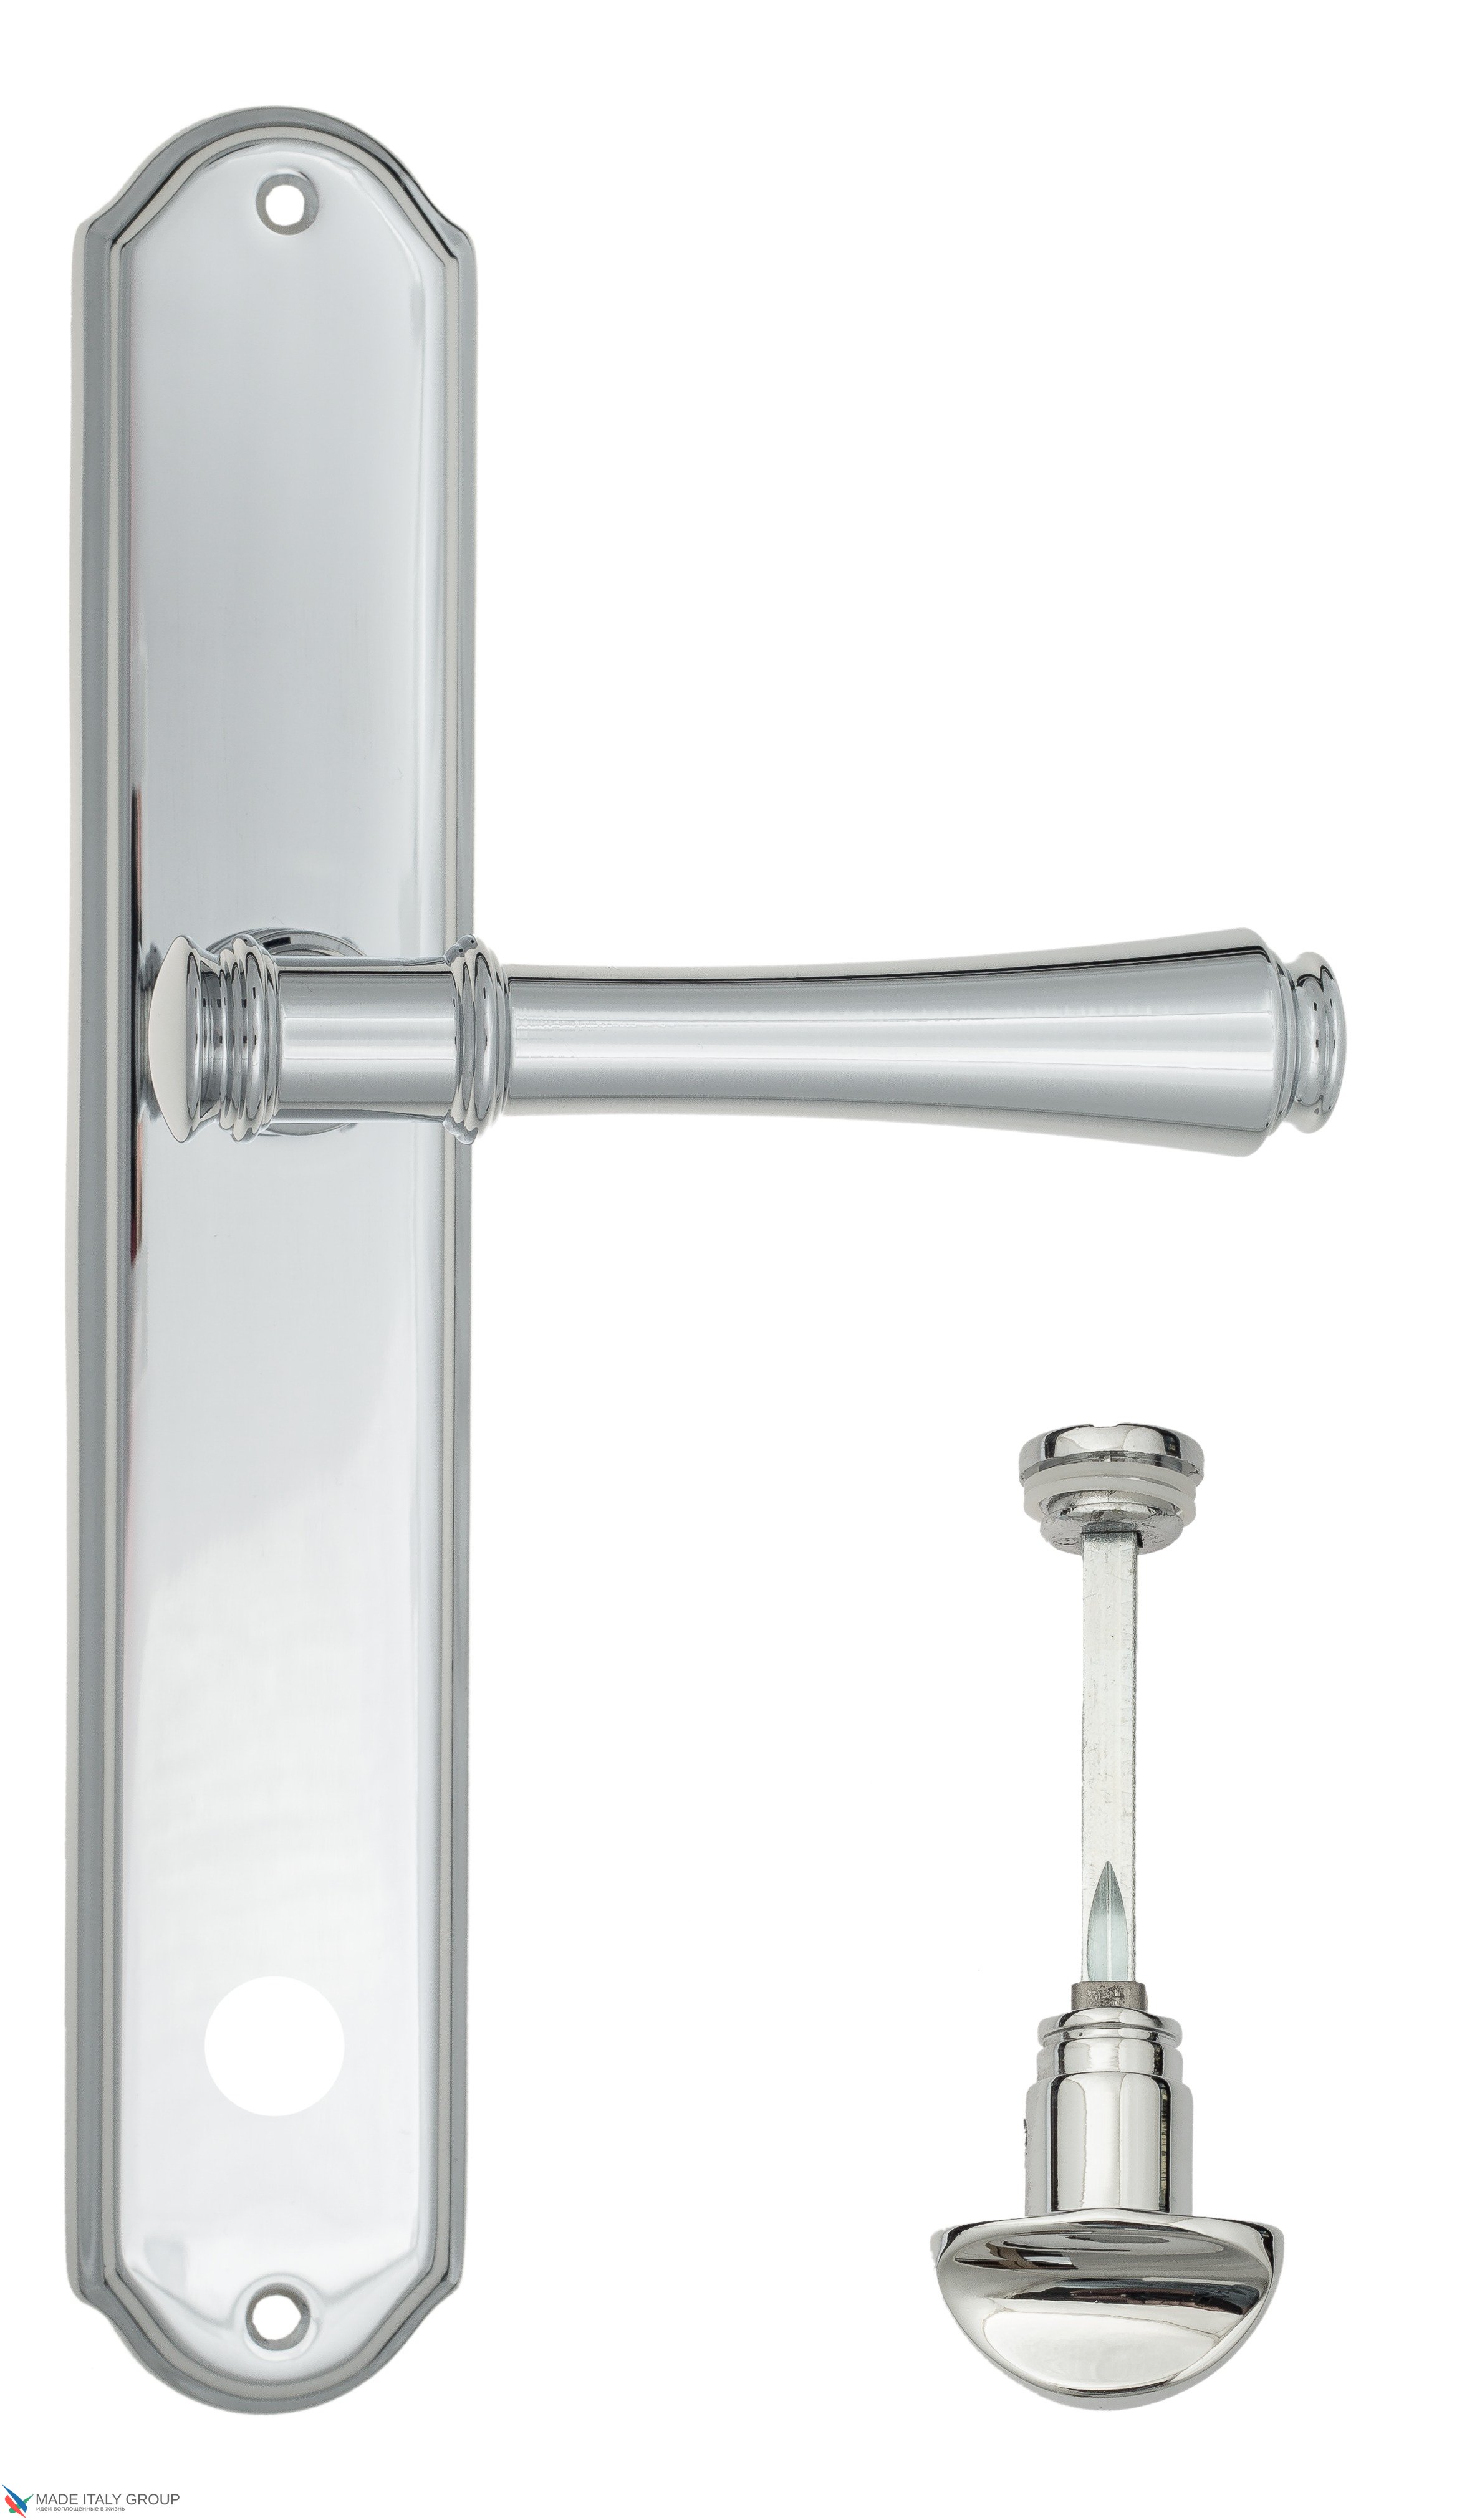 Дверная ручка Venezia "CALLISTO" WC-2 на планке PL02 полированный хром